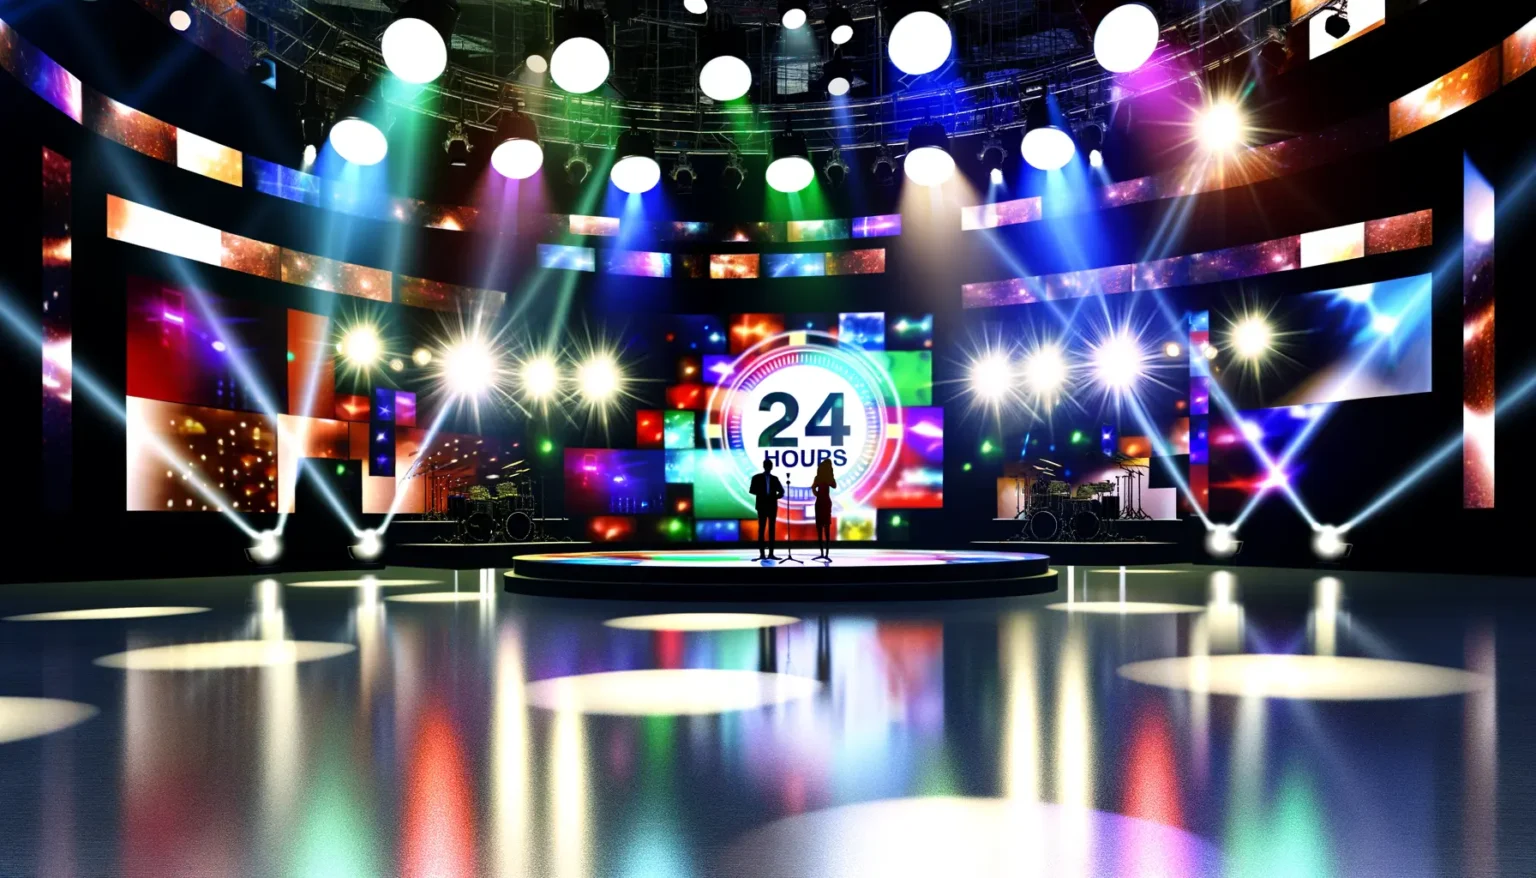 Eine buntes, beleuchtetes Fernsehstudio mit vielen Scheinwerfern und leuchtenden Bildschirmen, auf denen "24 HOURS" steht. Zwei Silhouetten stehen im Vordergrund auf einer Bühne und scheinen in ein Gespräch vertieft zu sein. Im Hintergrund ist eine Schlagzeugbühne zu sehen.